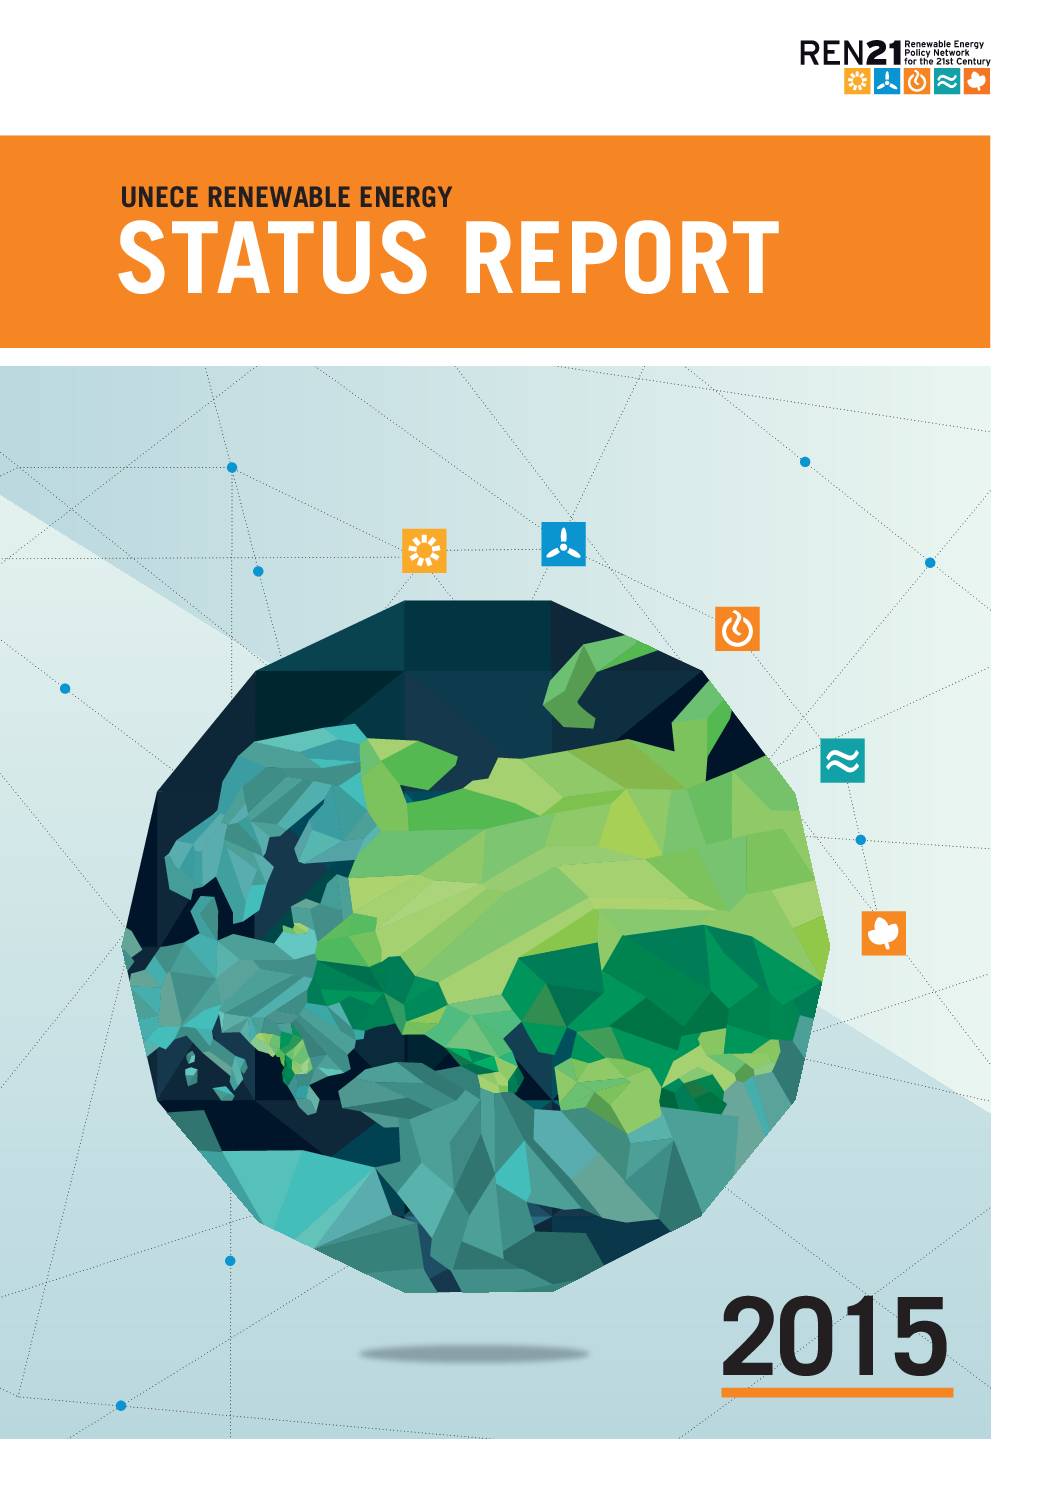 UNECE Renewable Energy: Status Report 2015